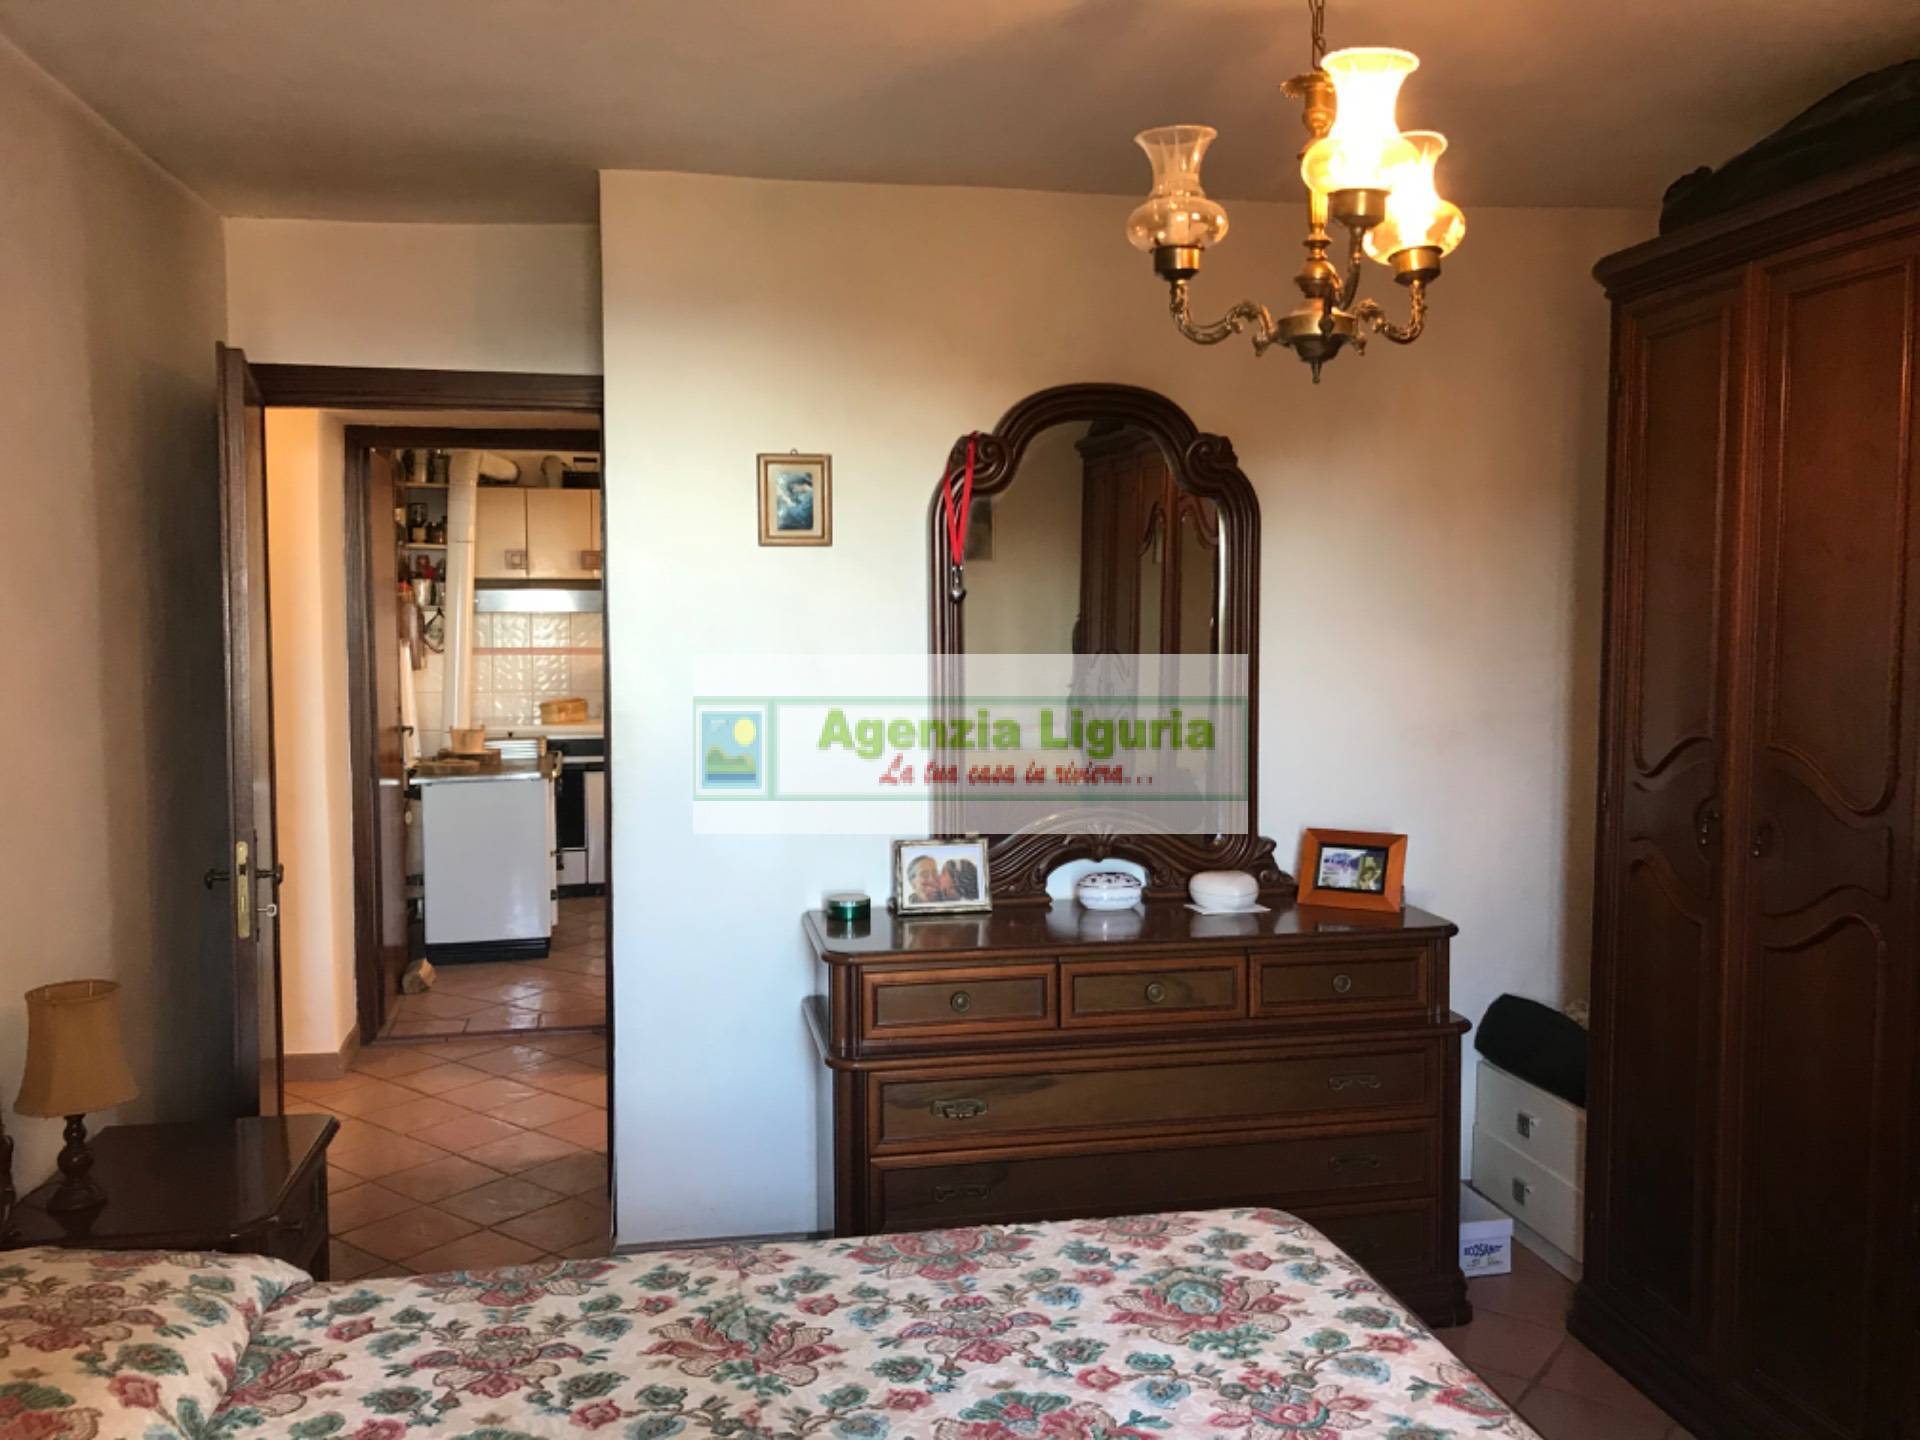 Appartamento in vendita a Perinaldo, 4 locali, prezzo € 70.000 | PortaleAgenzieImmobiliari.it